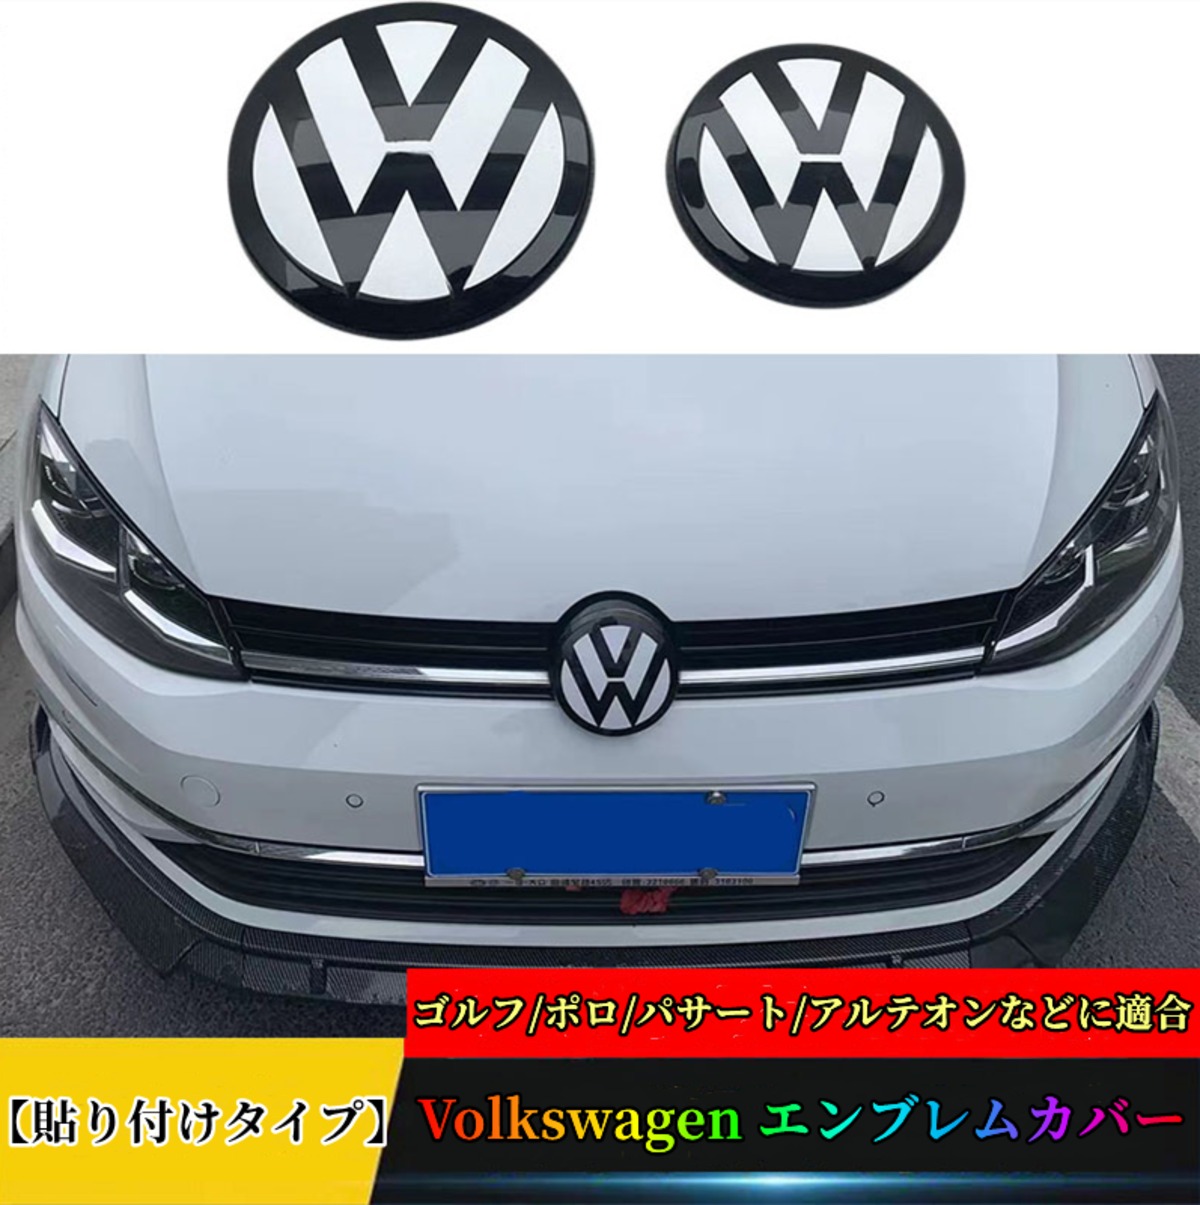 ゴルフ車付属品7種類 Volkswagen-